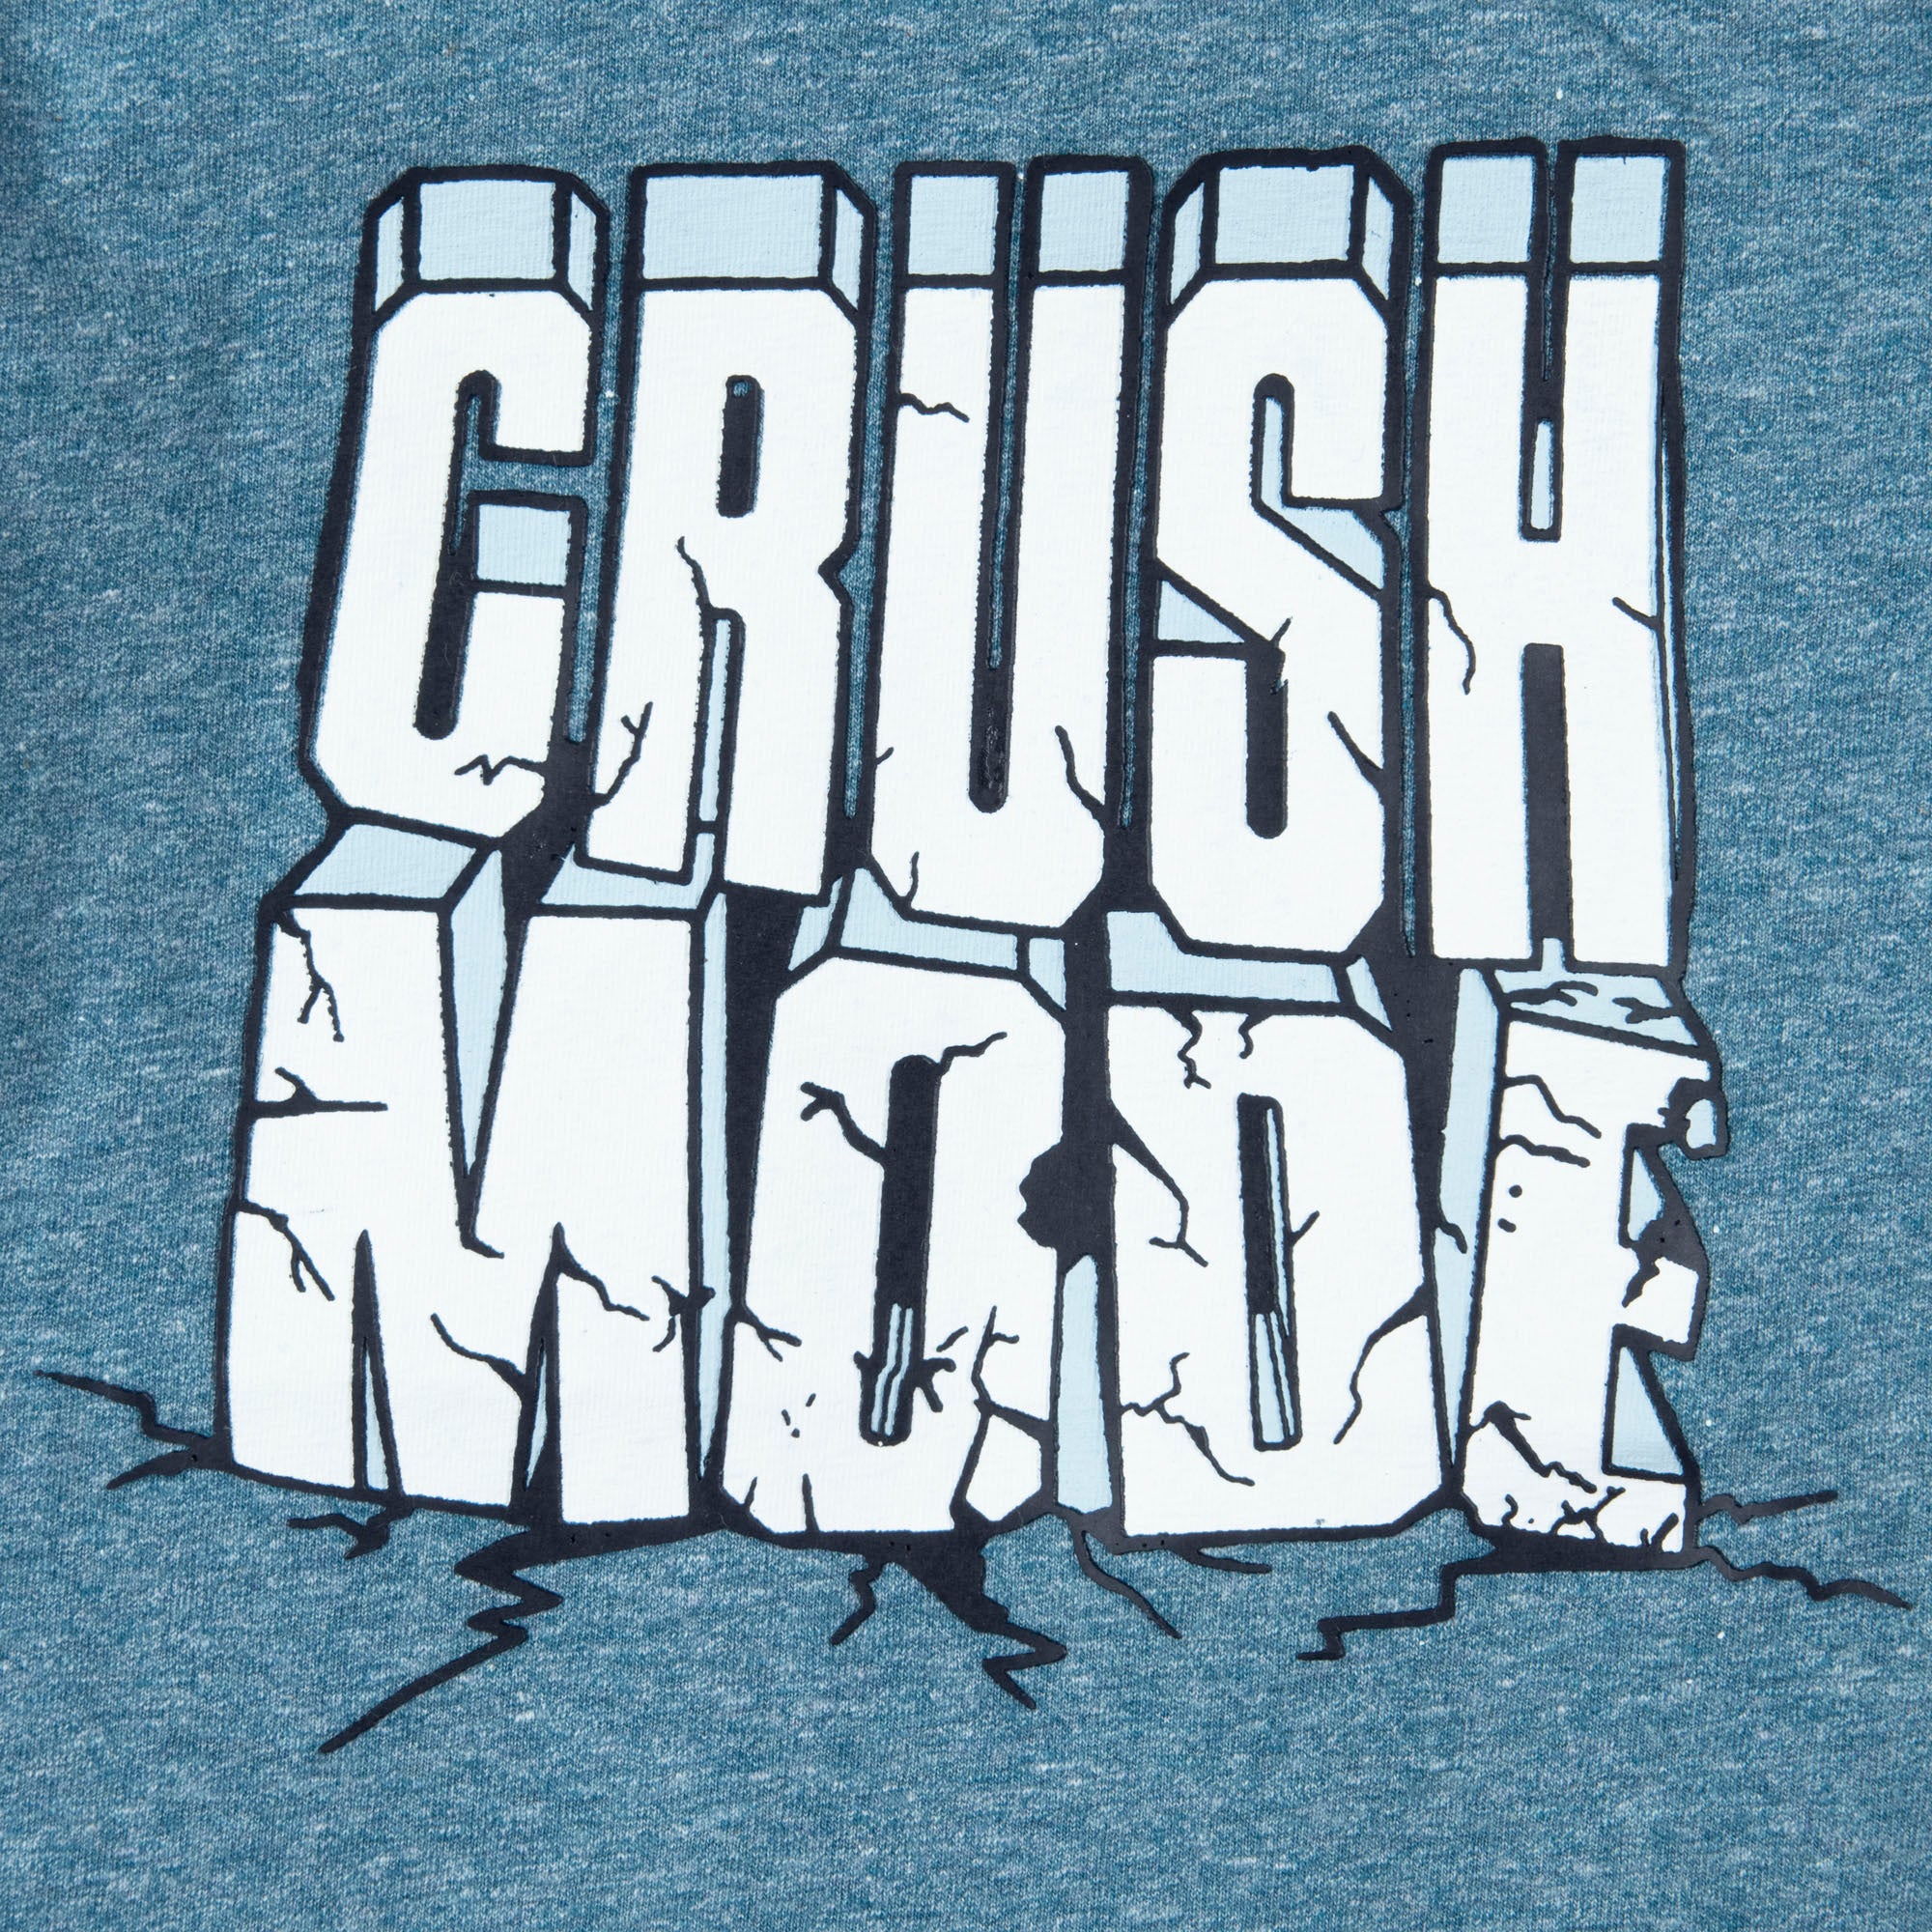 Crush Mode T-shirt